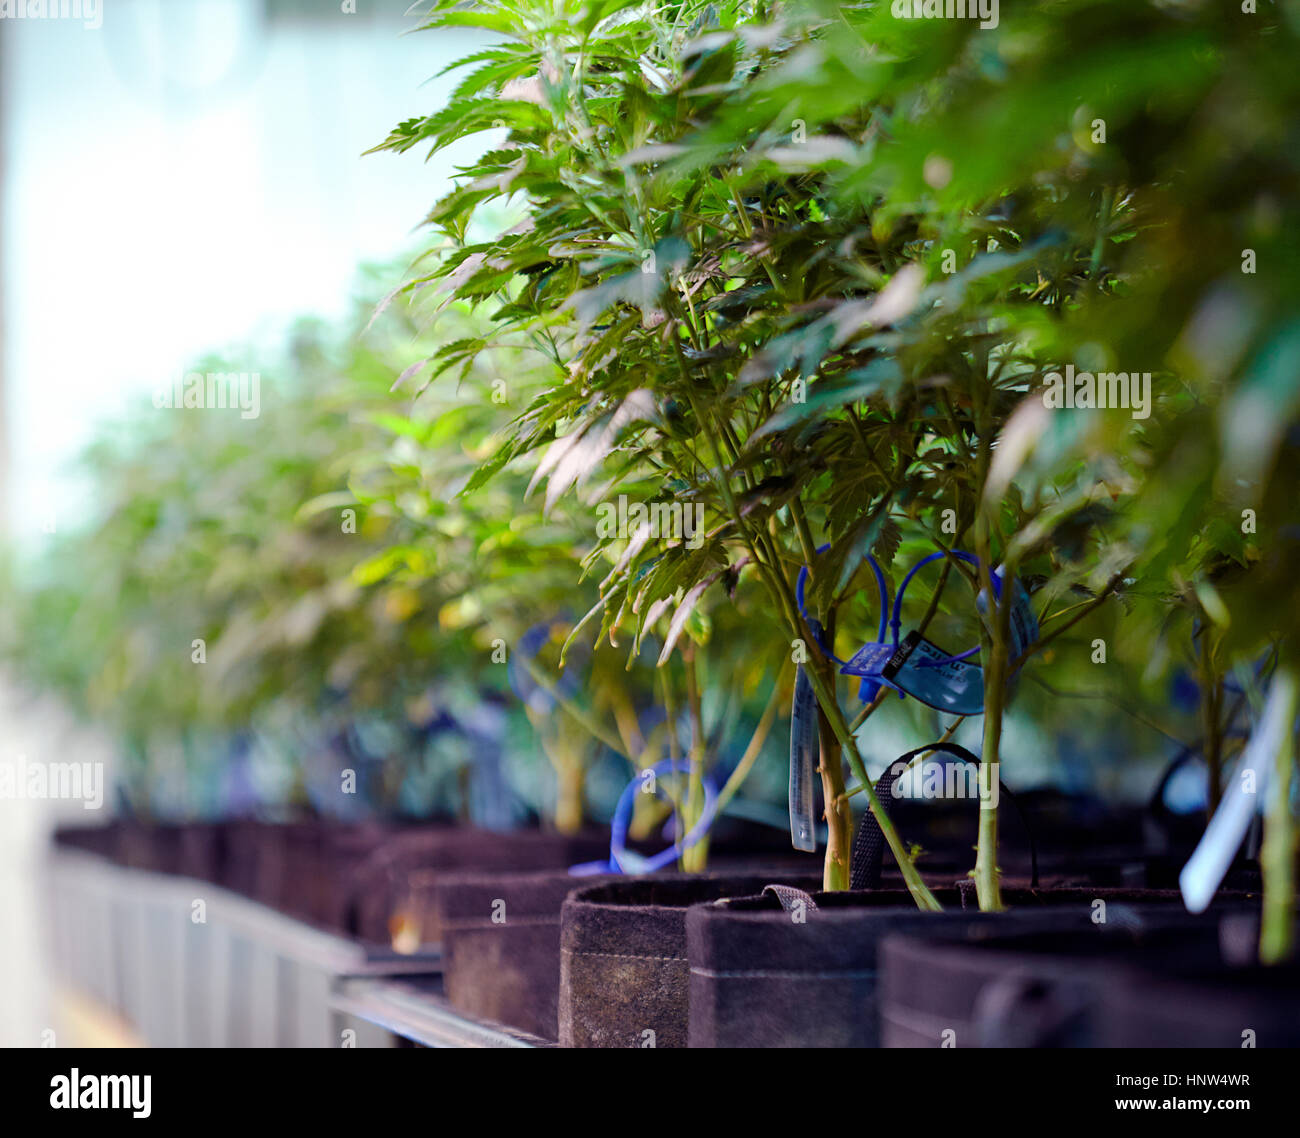 Cannabispflanzen im Gewächshaus Stockfoto